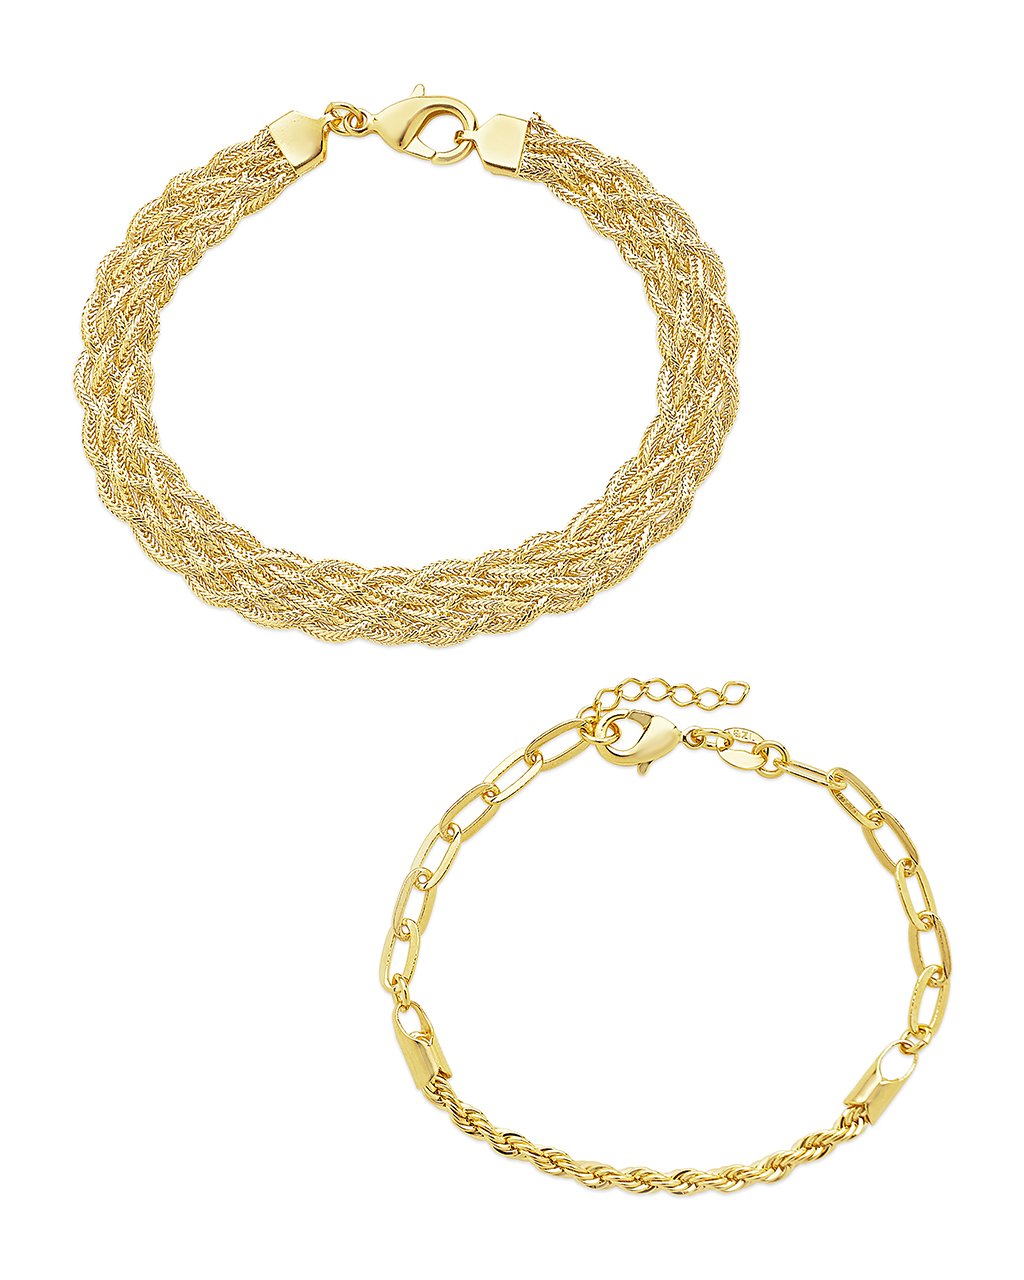 Braided & Woven Bracelet Set of 2 Bracelet Sterling Forever Gold 